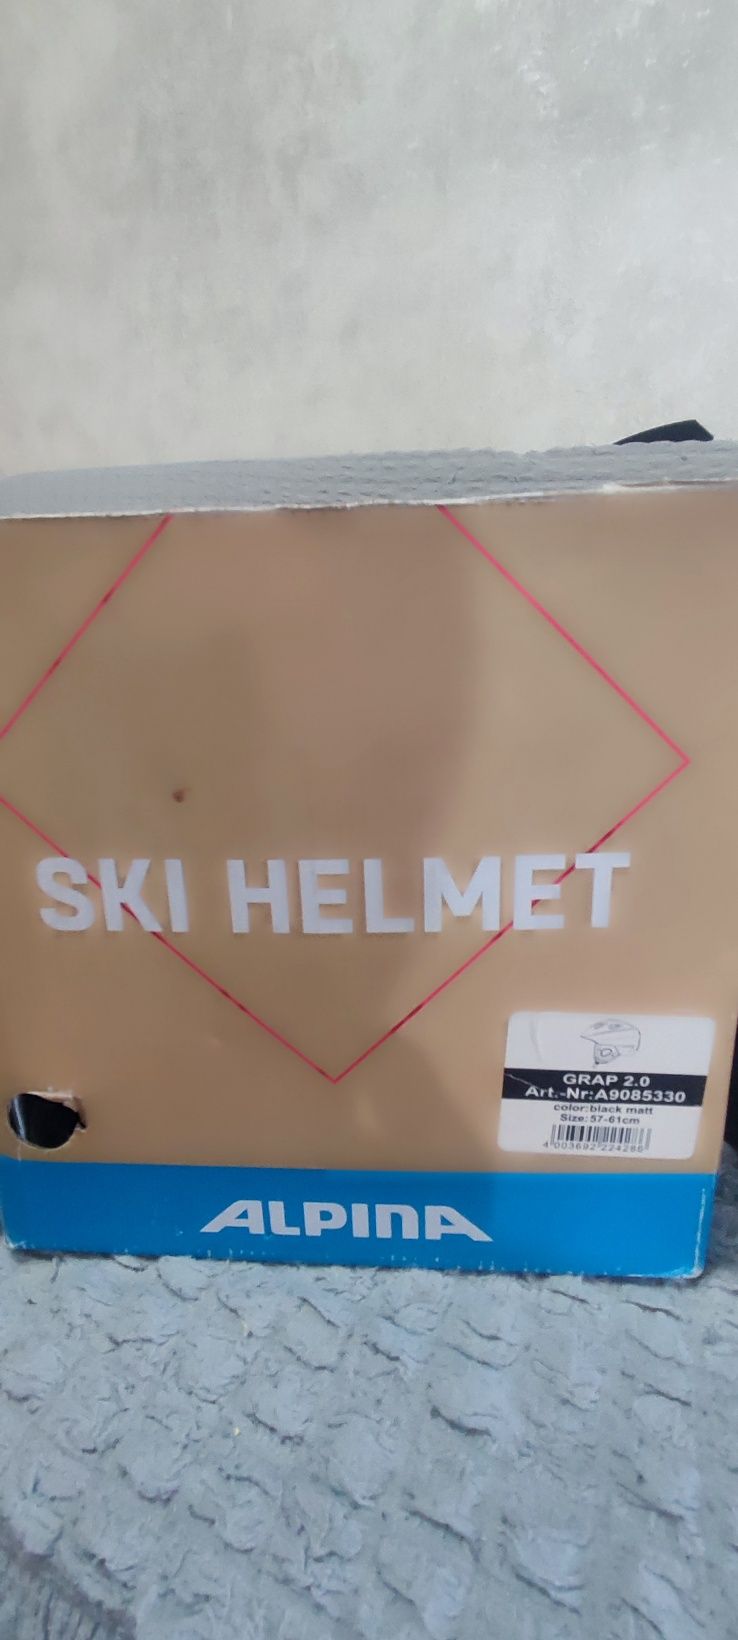 Шлем горнолыжный